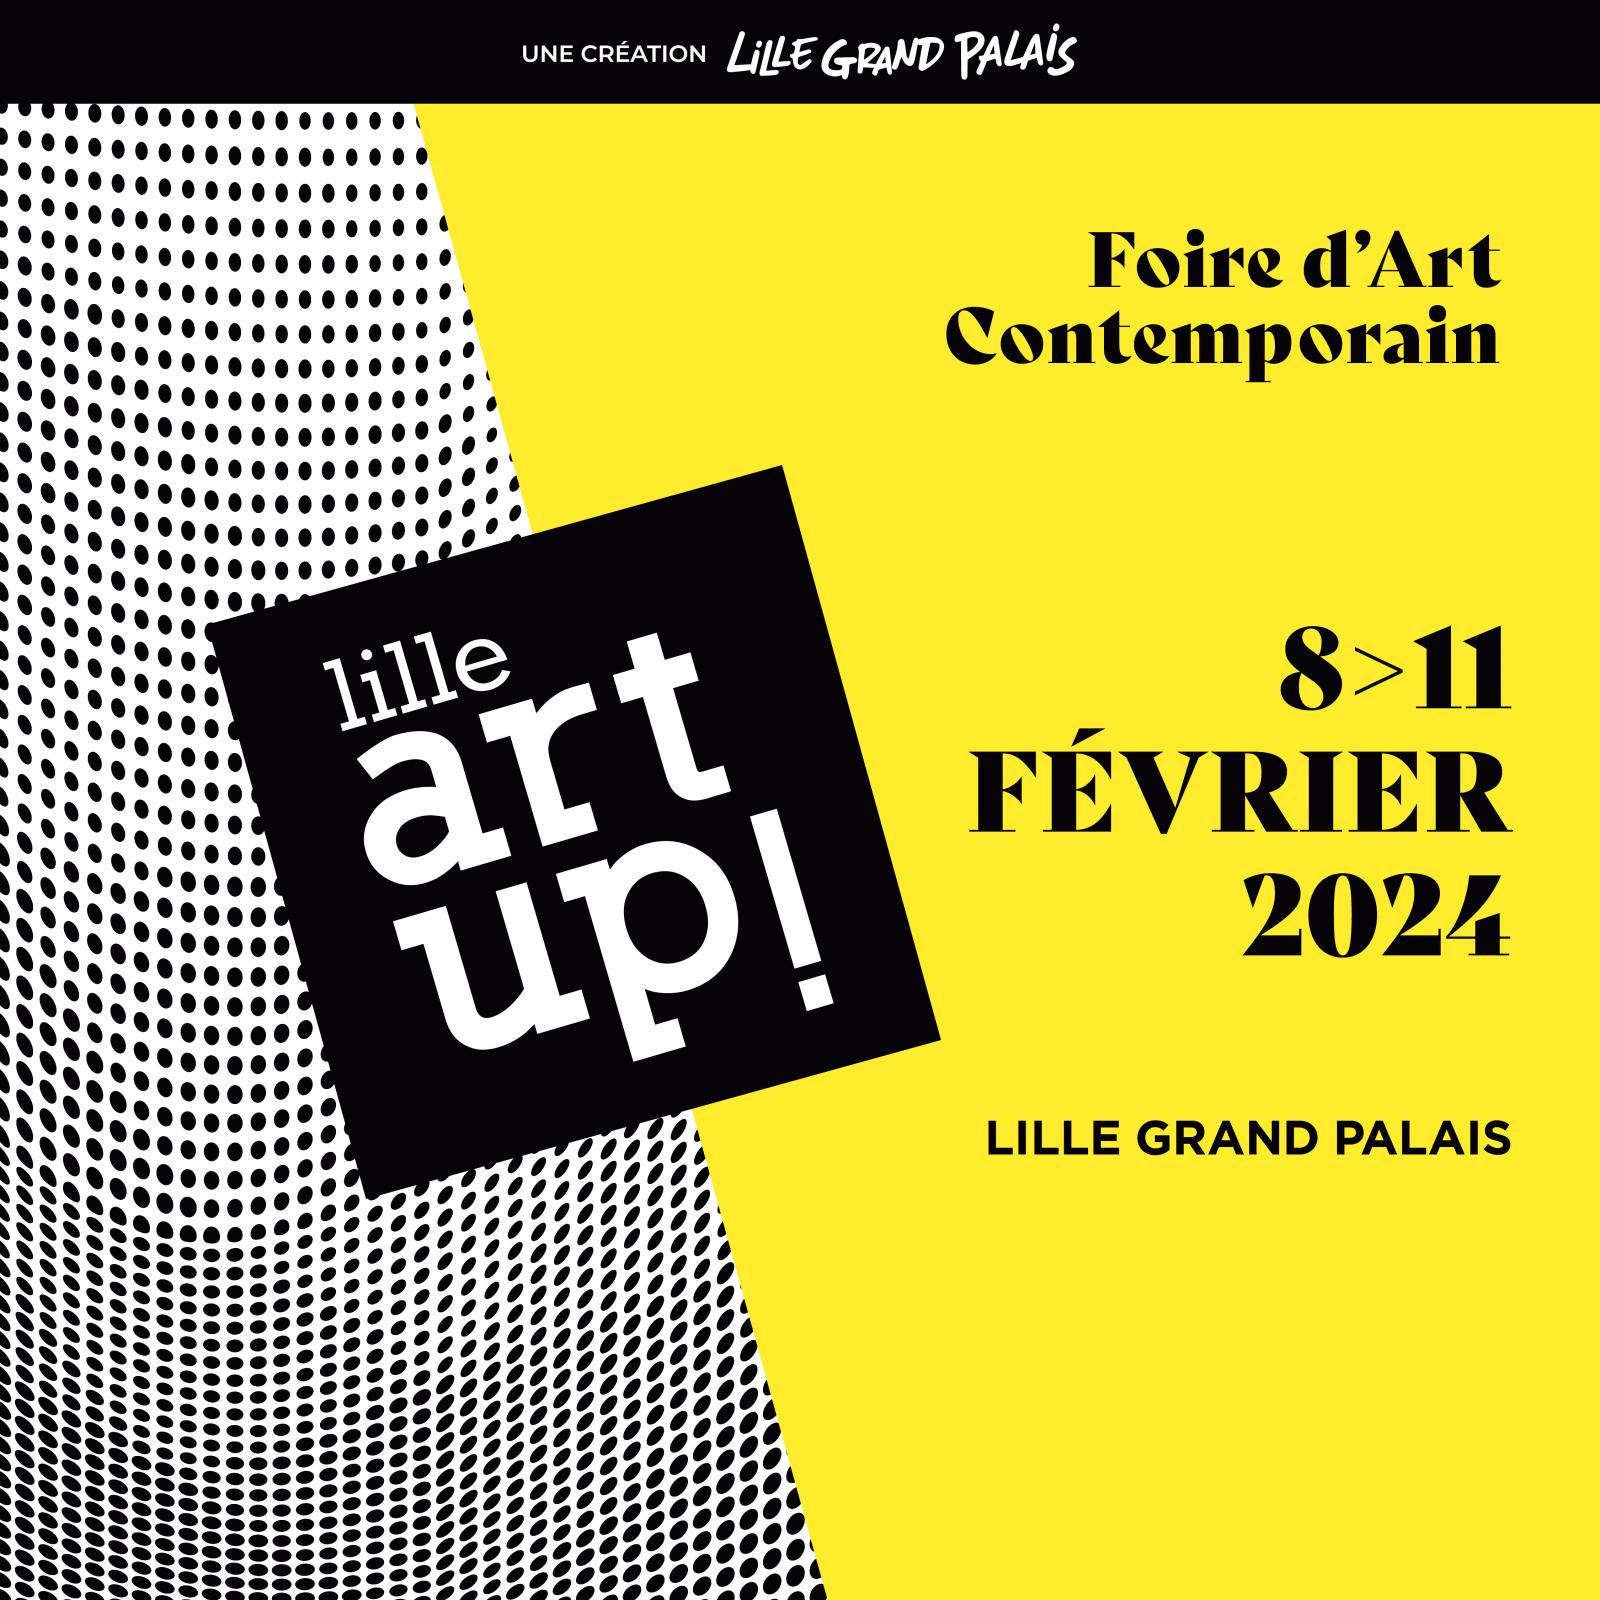 Une 16e édition avancée pour Lille Art Up!